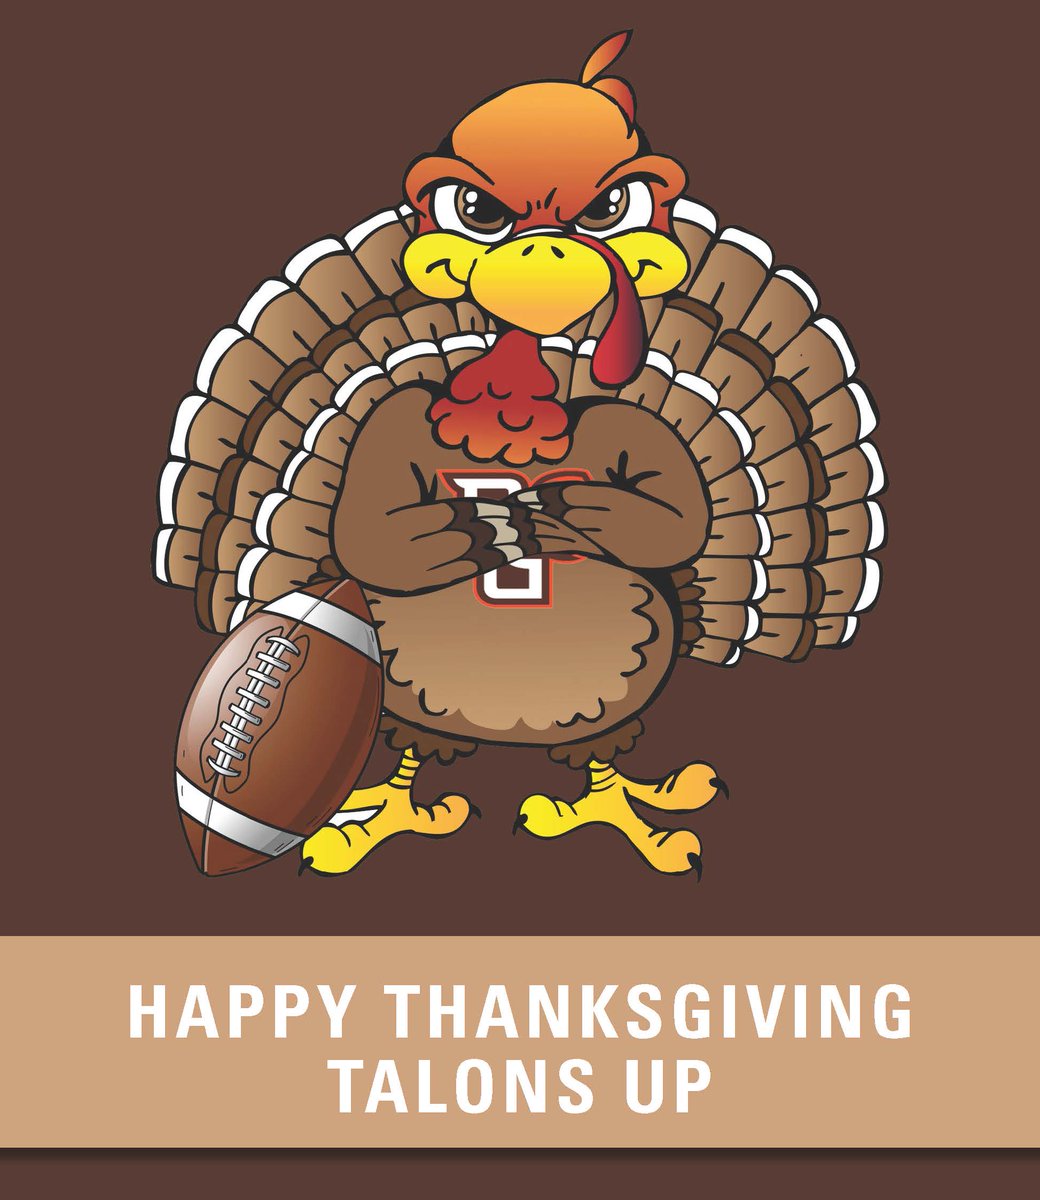 Happy Thanksgiving from BGSU Football Family! #AyZiggy